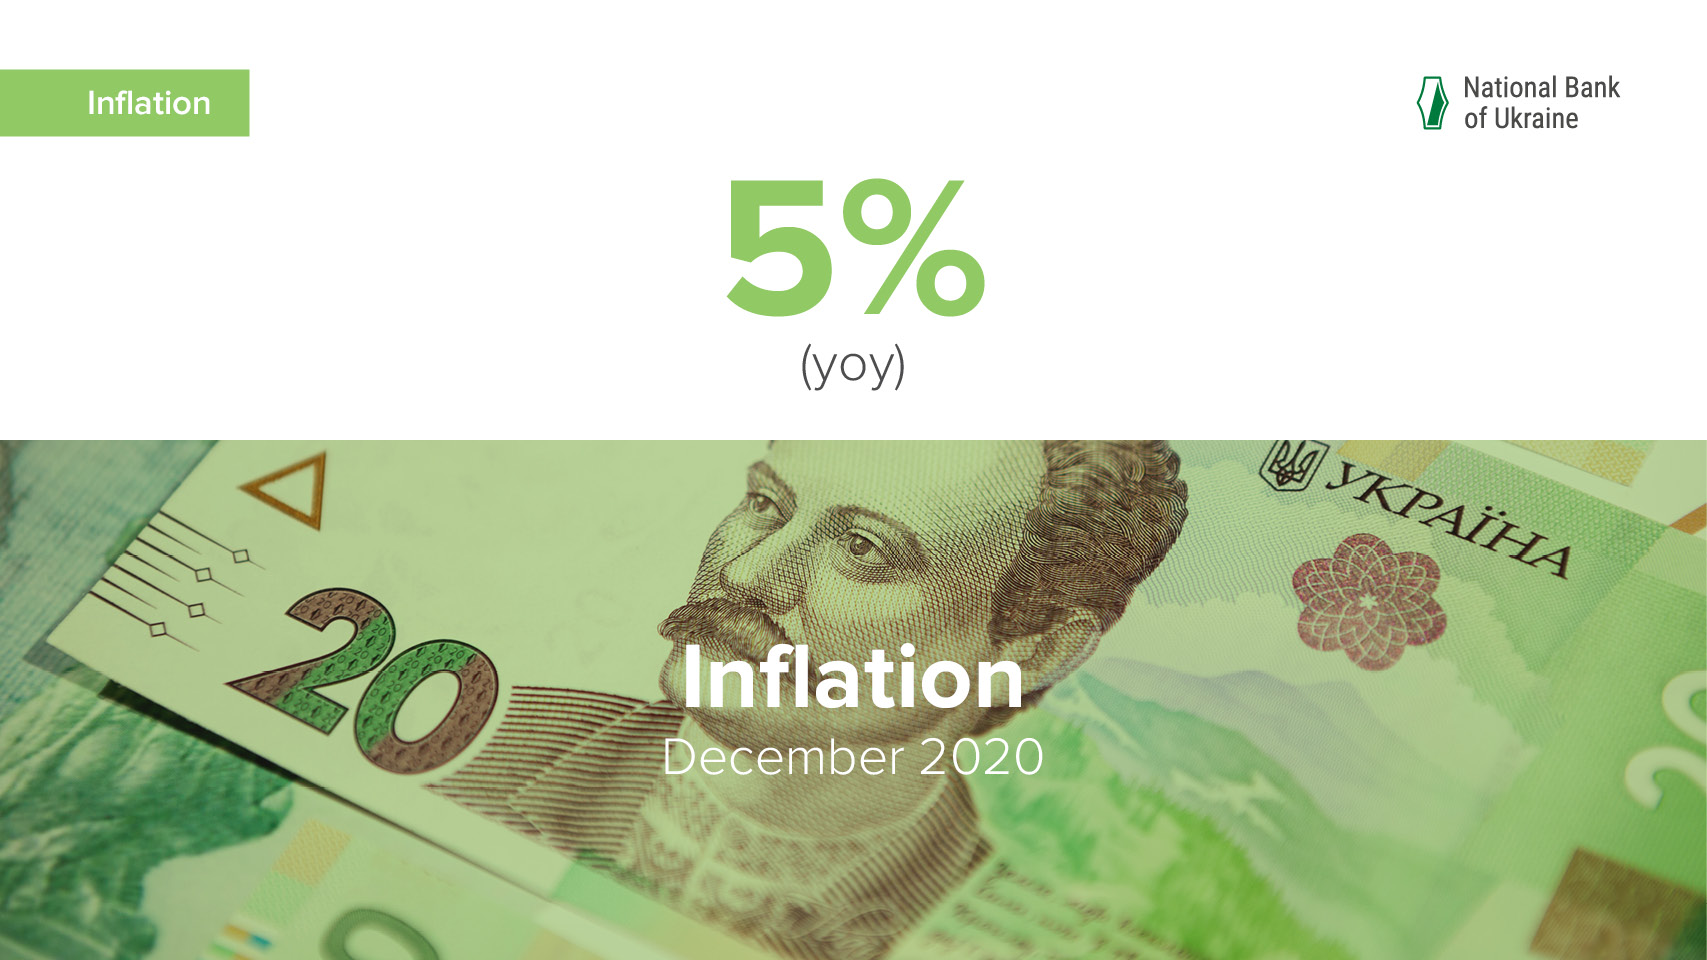 NBU February 2020 Inflation Update